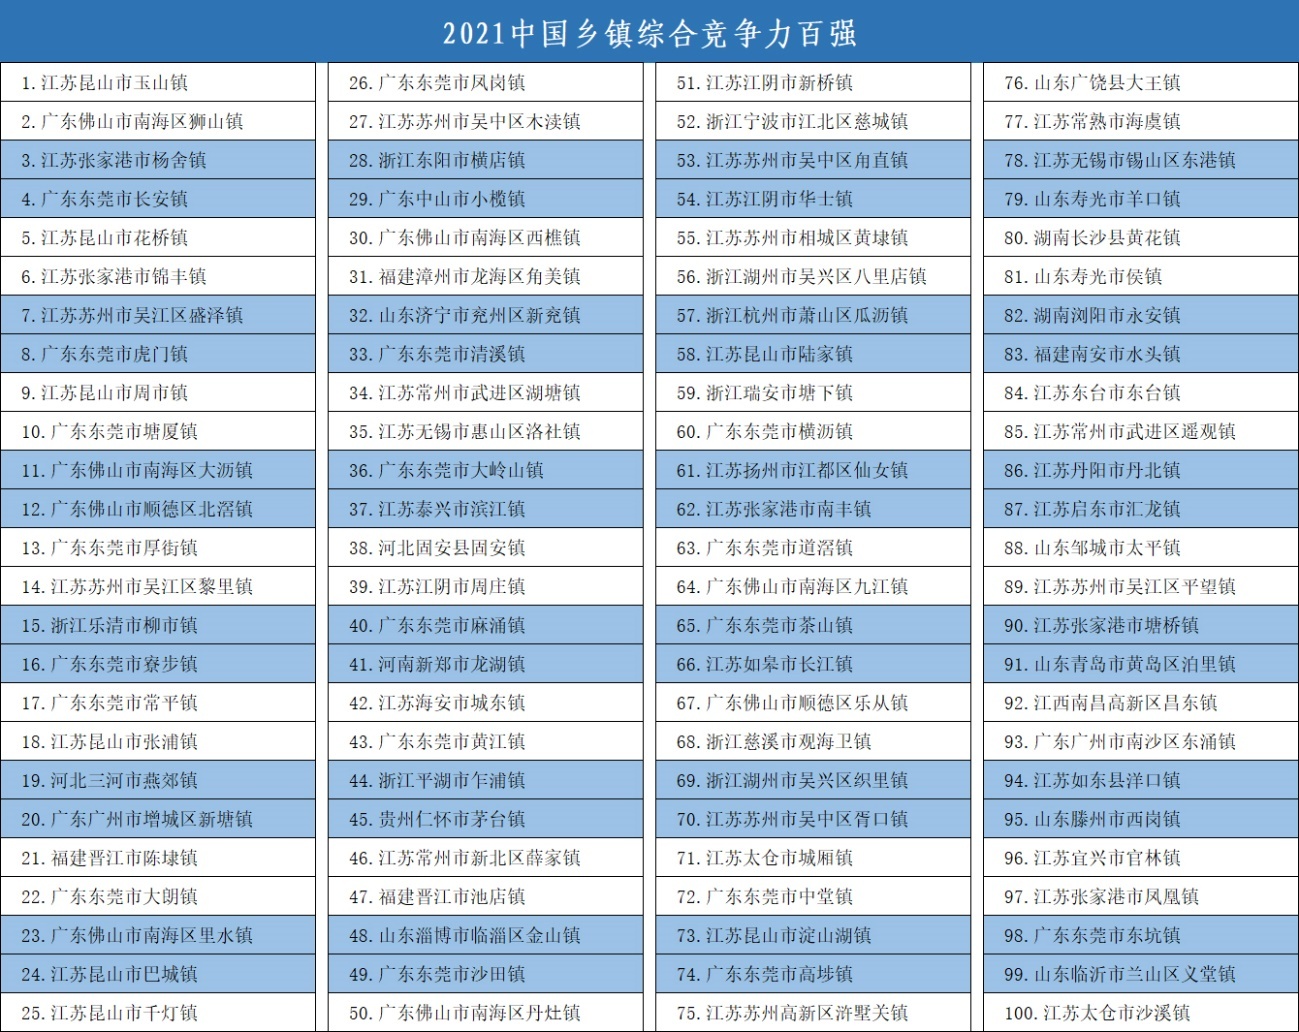 2021中国百强镇名单揭晓  湖南两地上榜